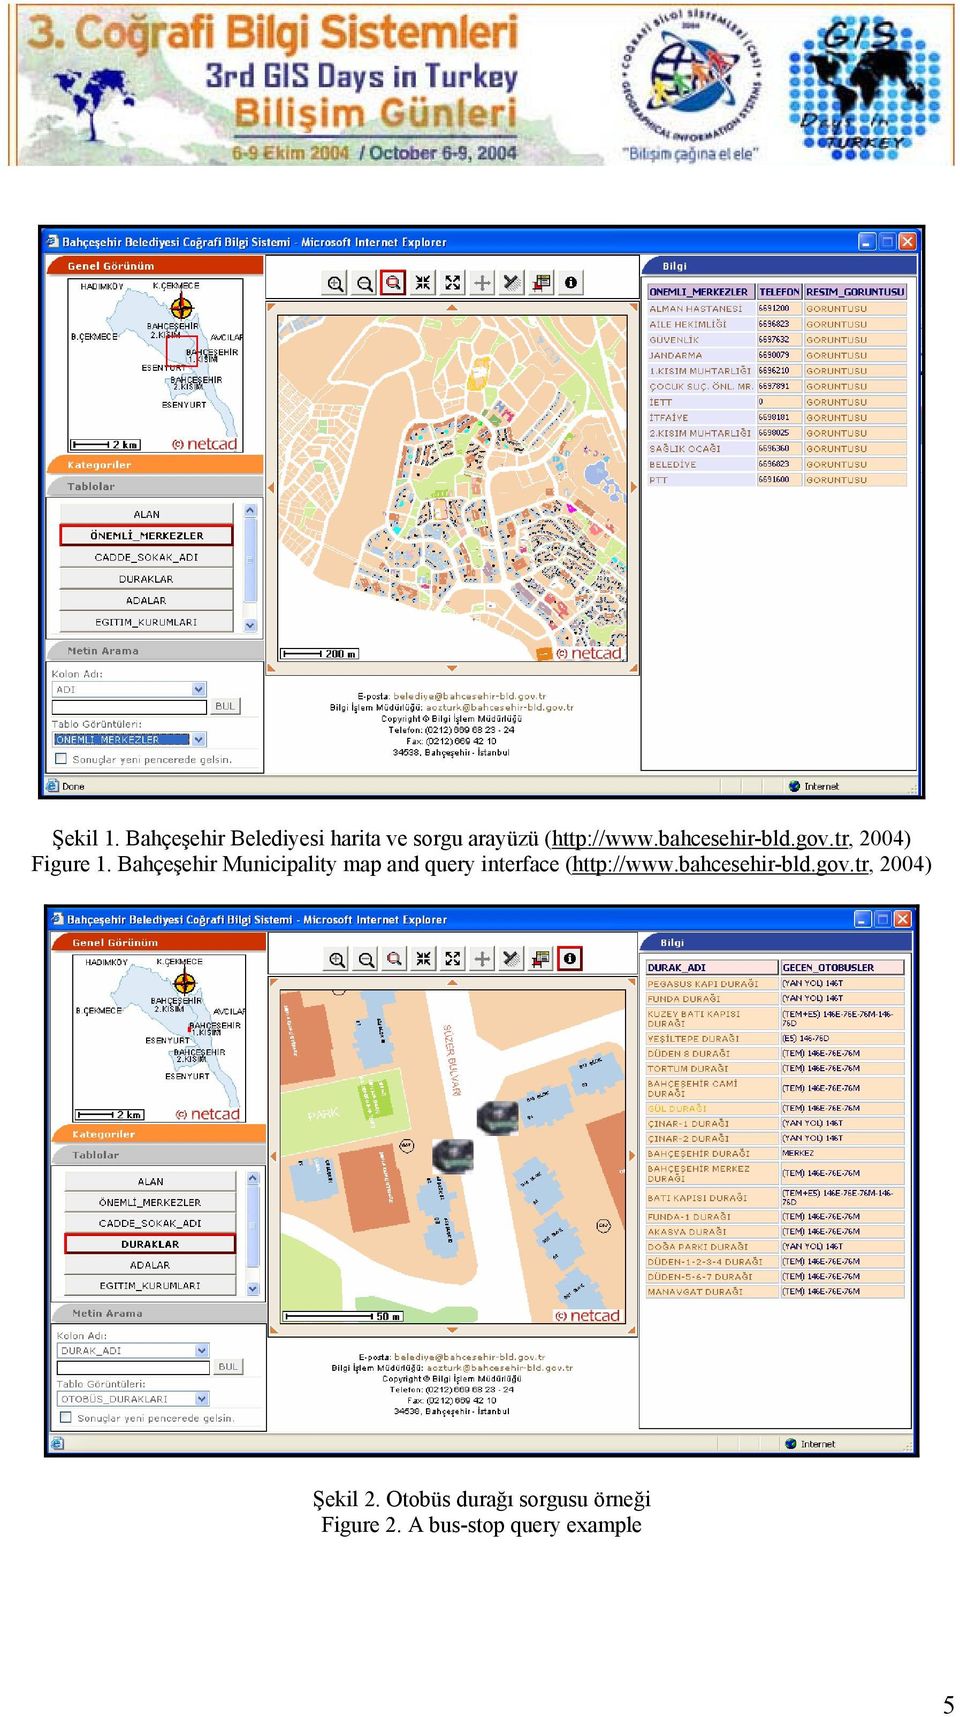 Bahçeşehir Municipality map and query interface (http://www.